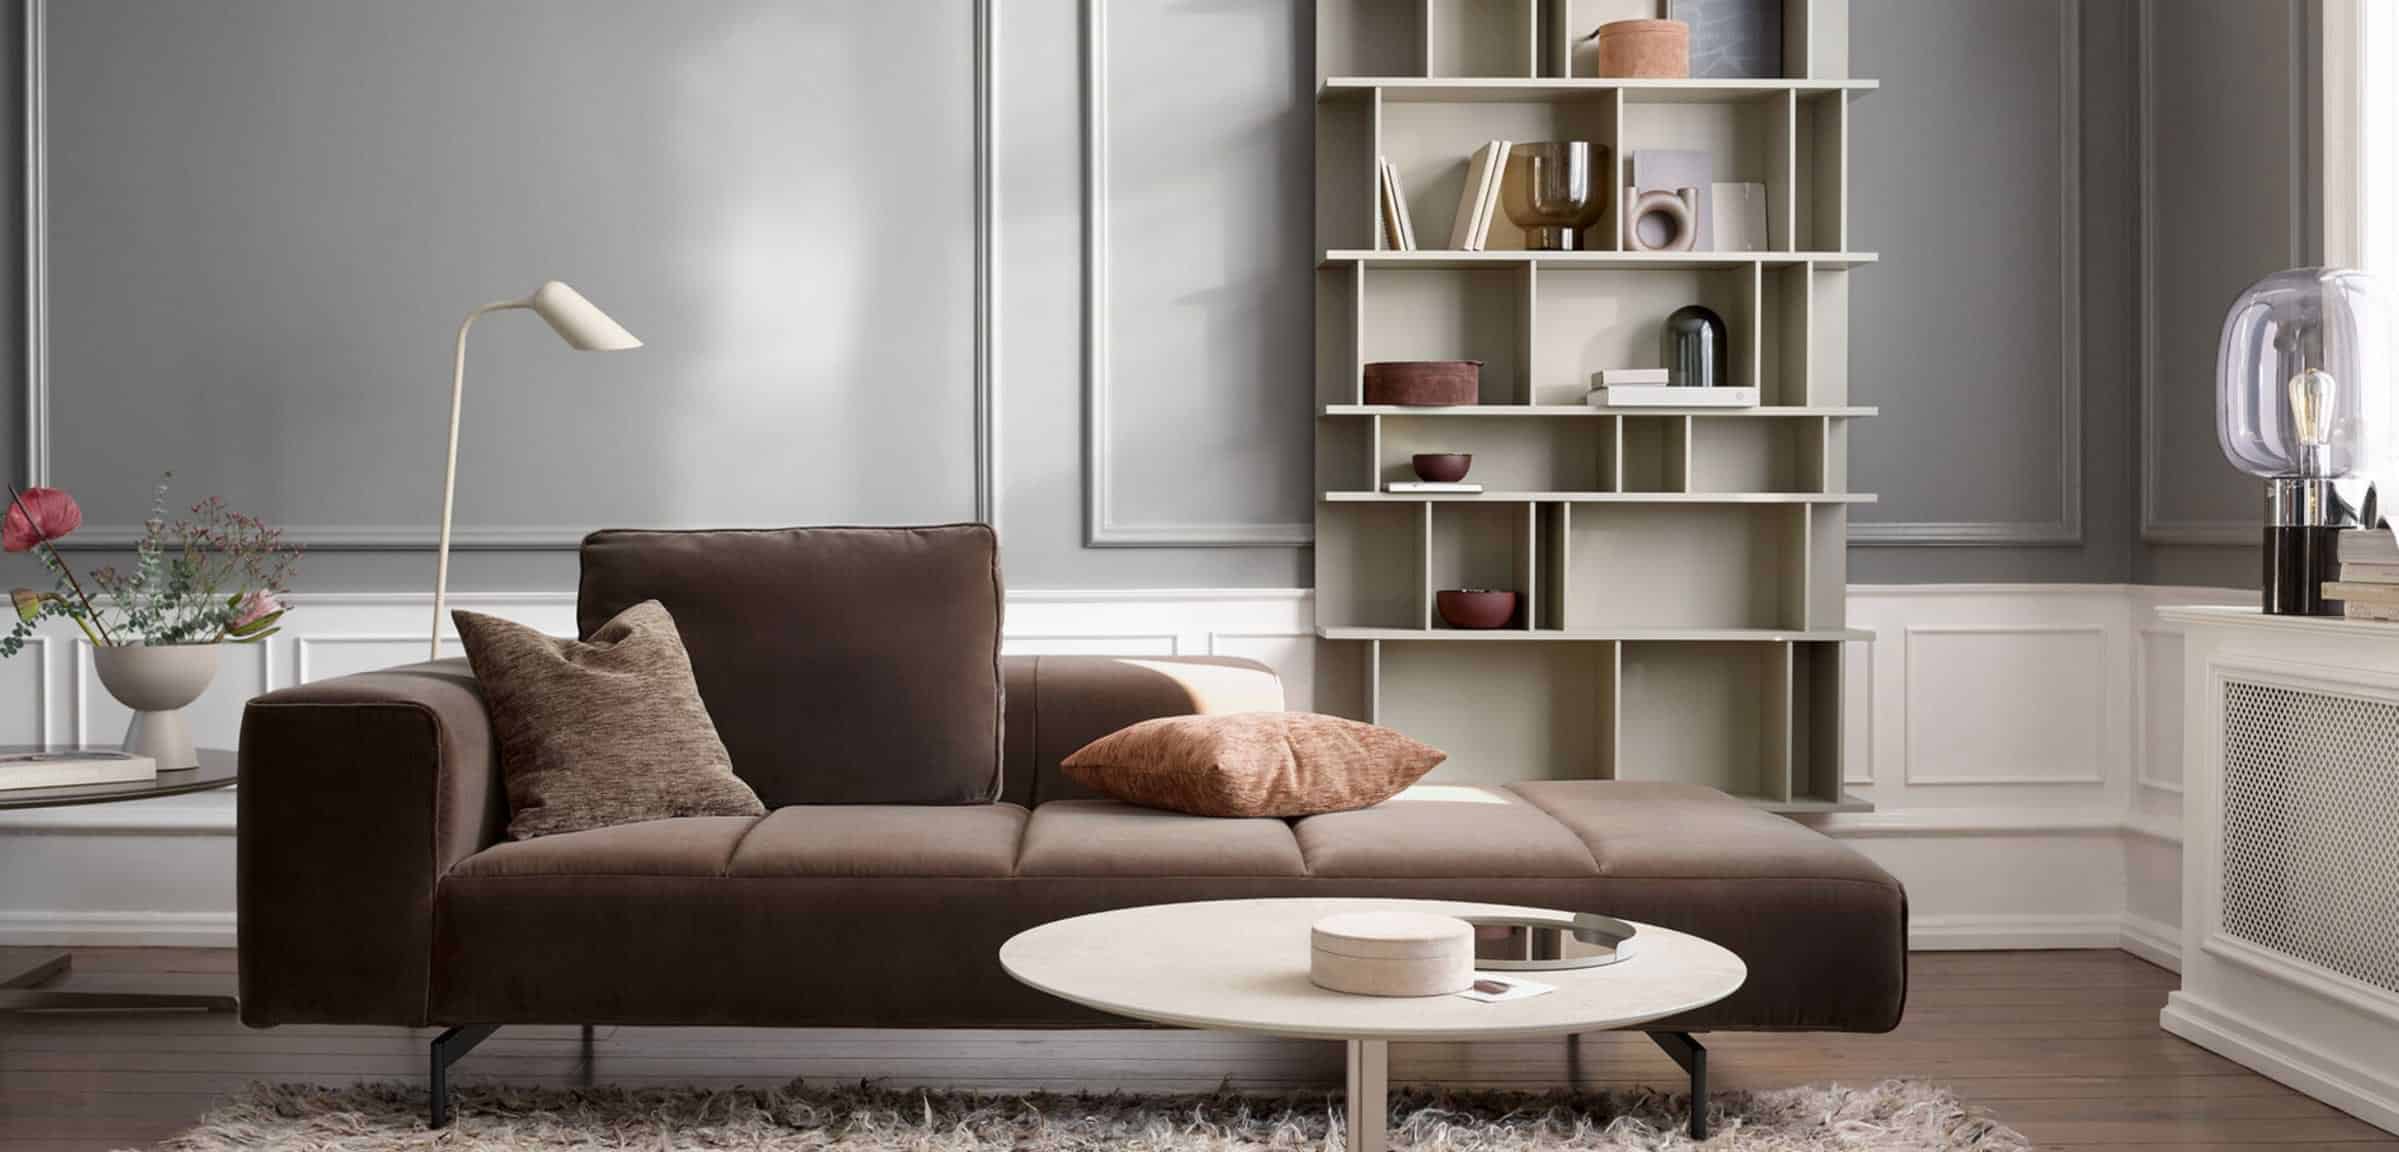 Como wall shelf design system in living room